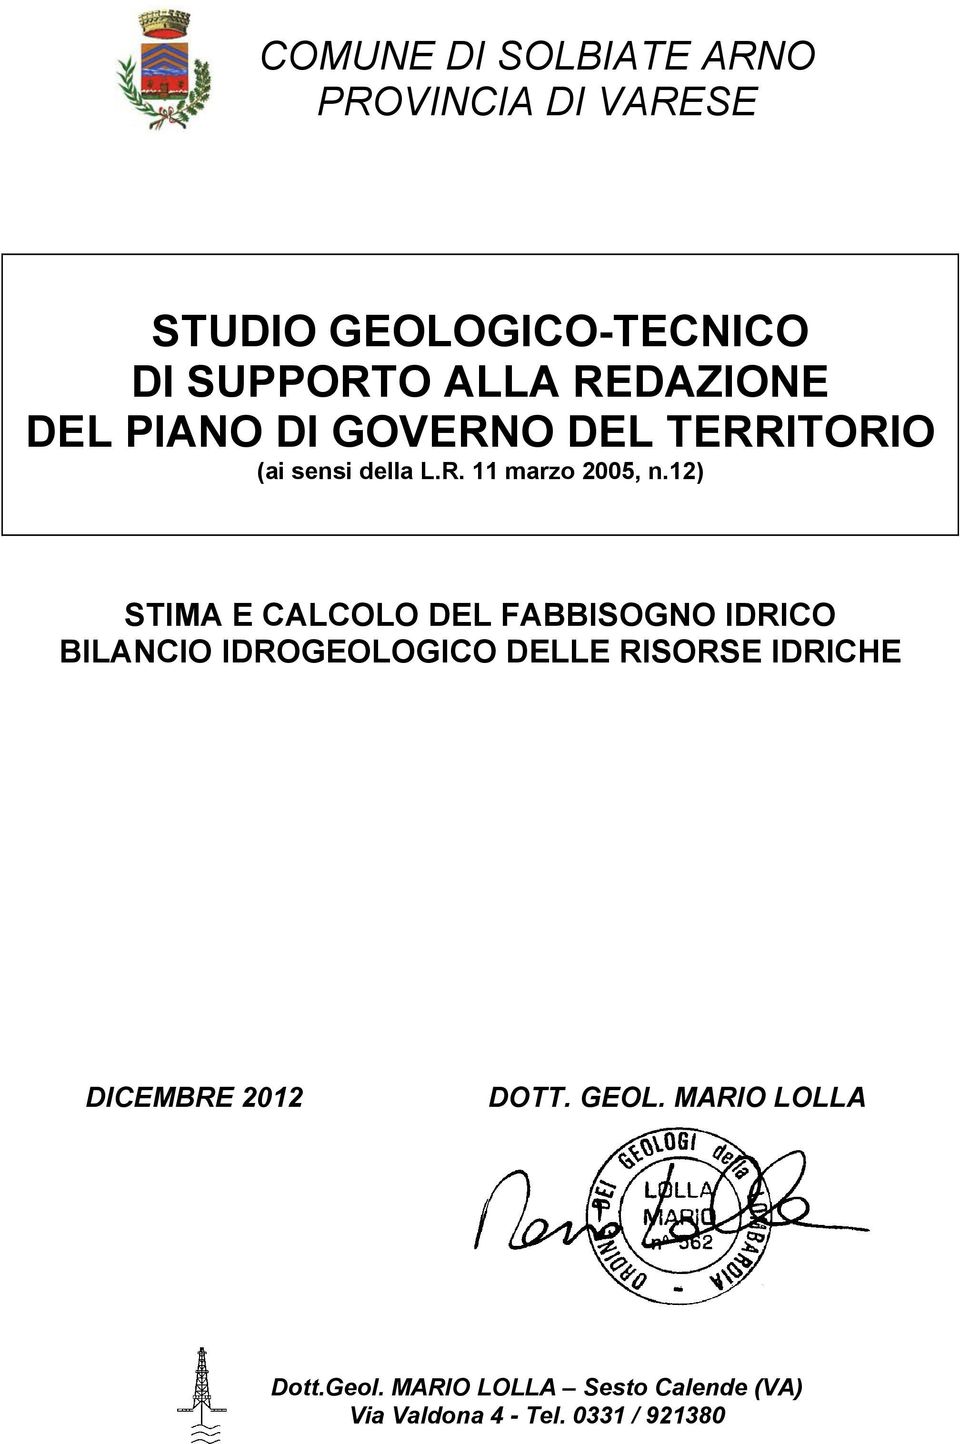 12) STIMA E CALCOLO DEL FABBISOGNO IDRICO BILANCIO IDROGEOLOGICO DELLE RISORSE IDRICHE